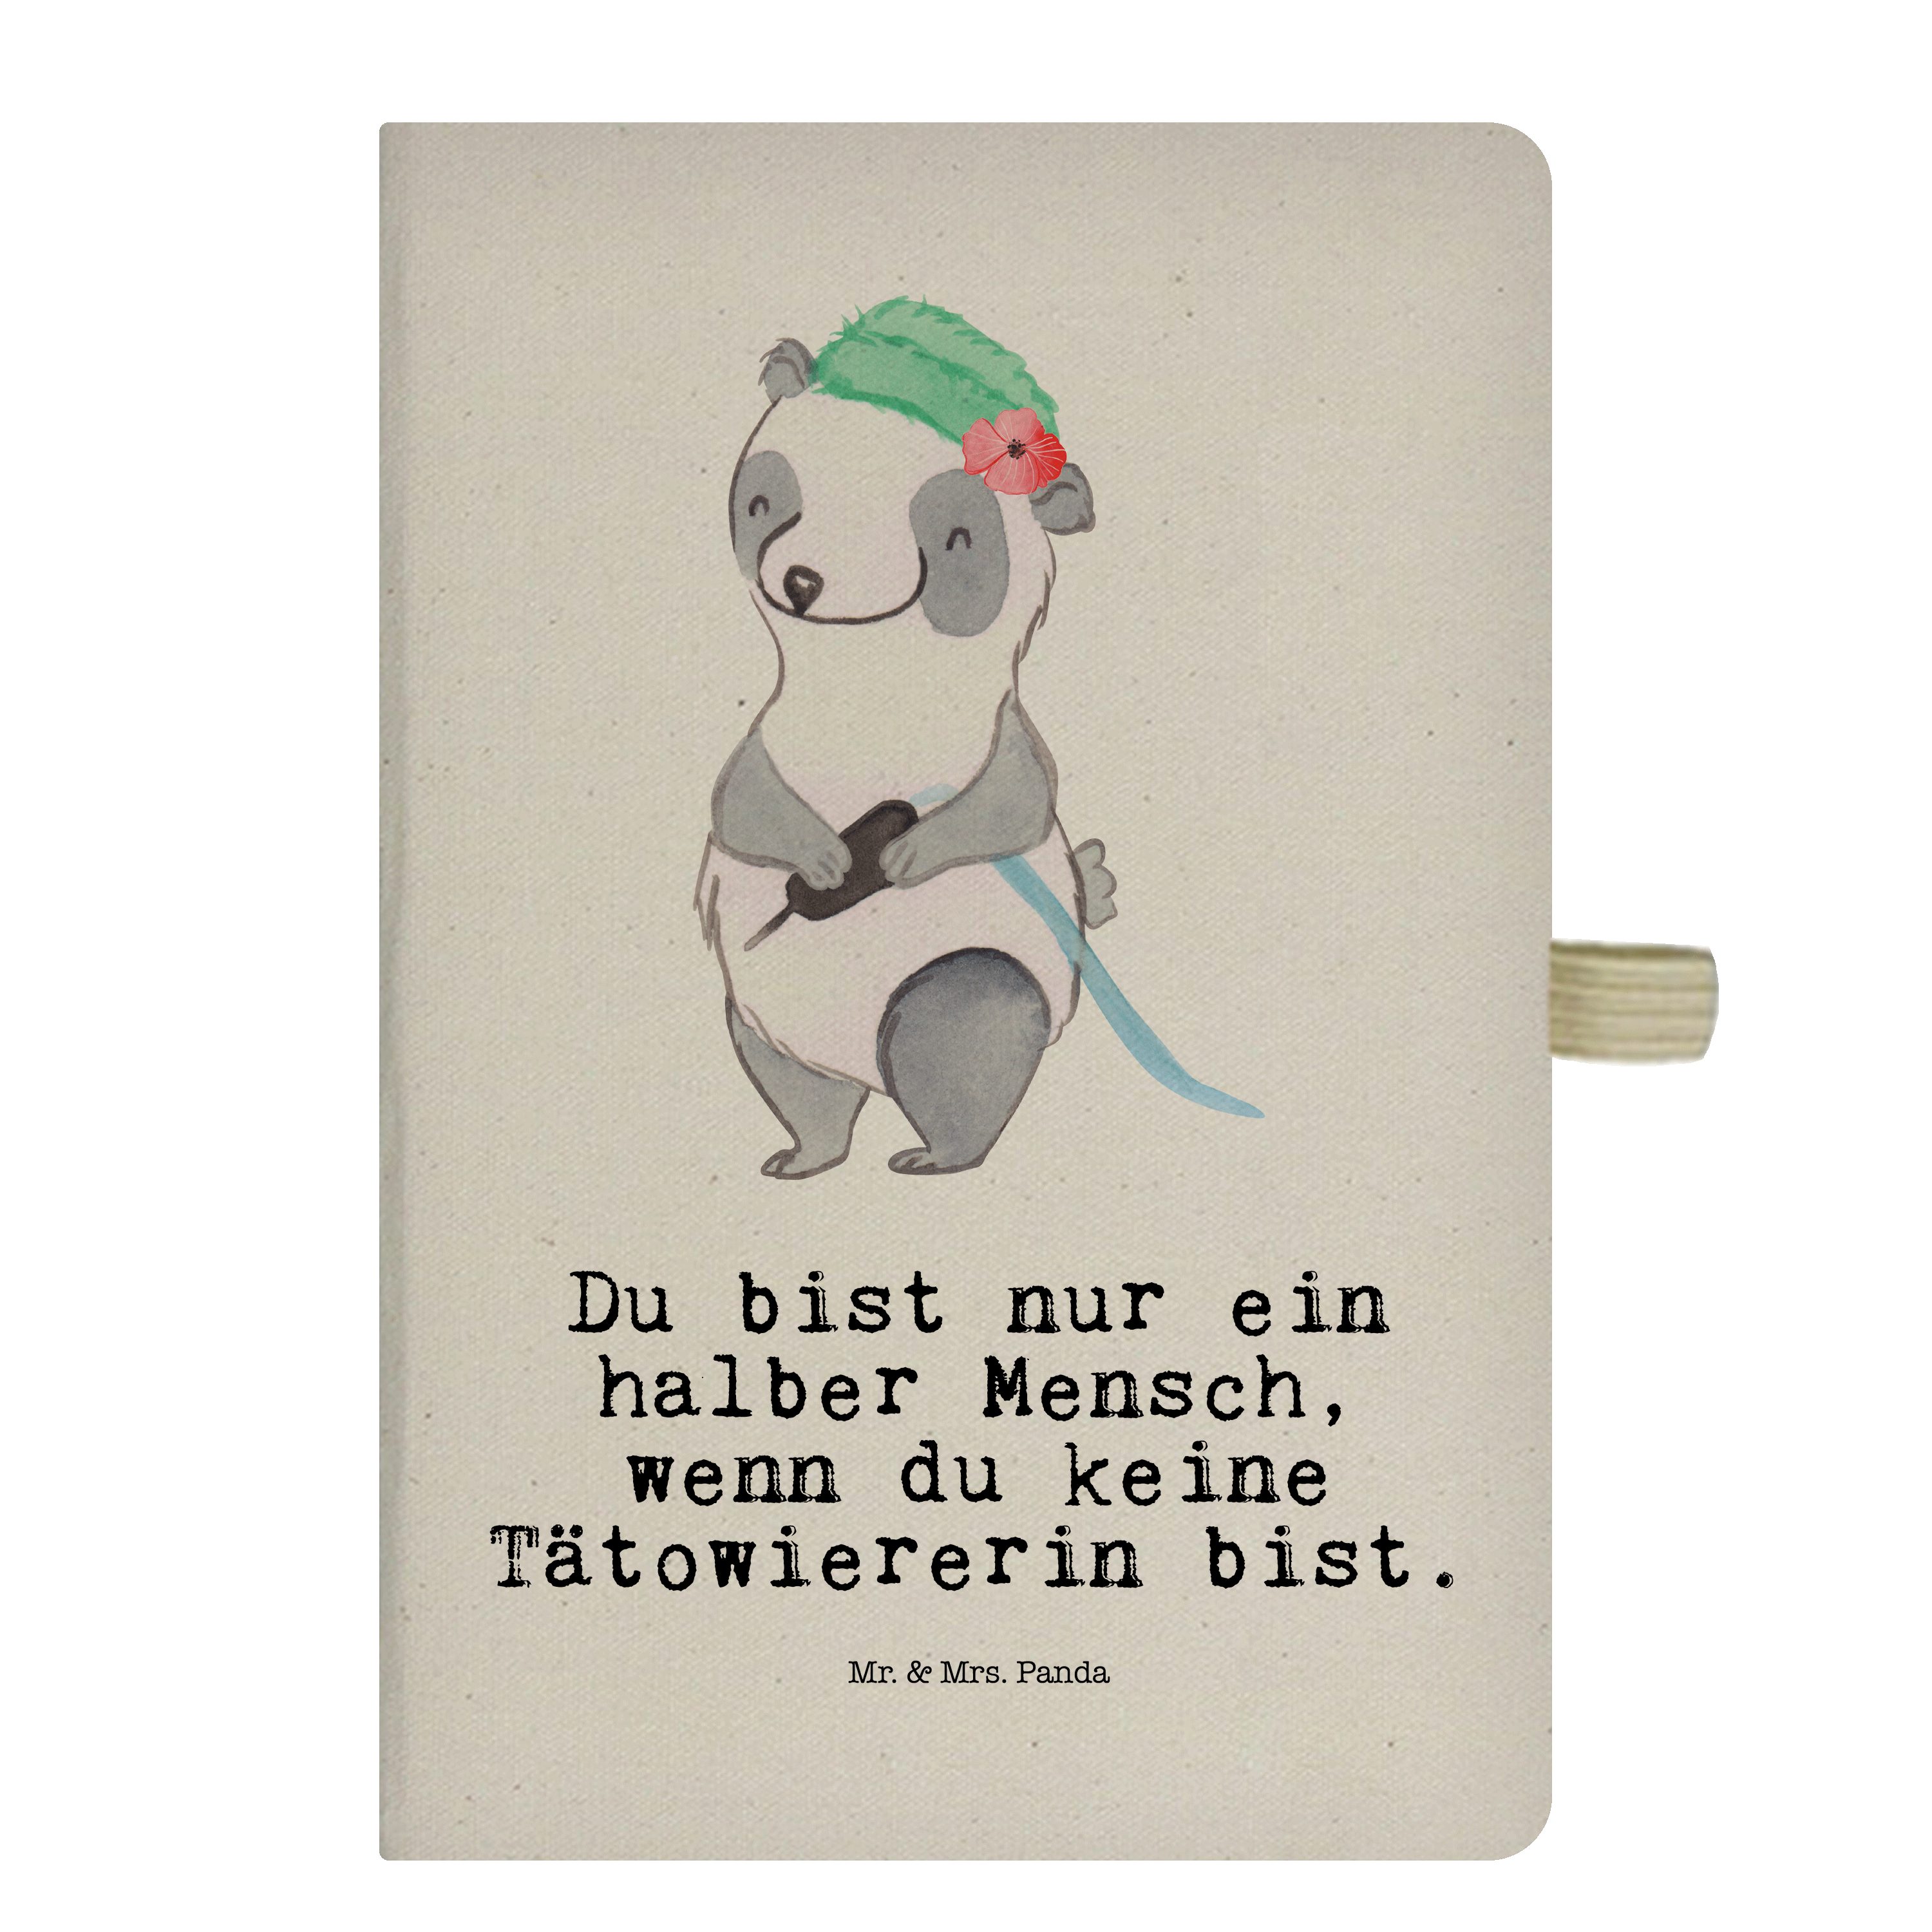 Mr. & Mrs. Panda Notizbuch Tätowiererin mit Herz - Transparent - Geschenk, Tagebuch, Dankeschön, Mr. & Mrs. Panda